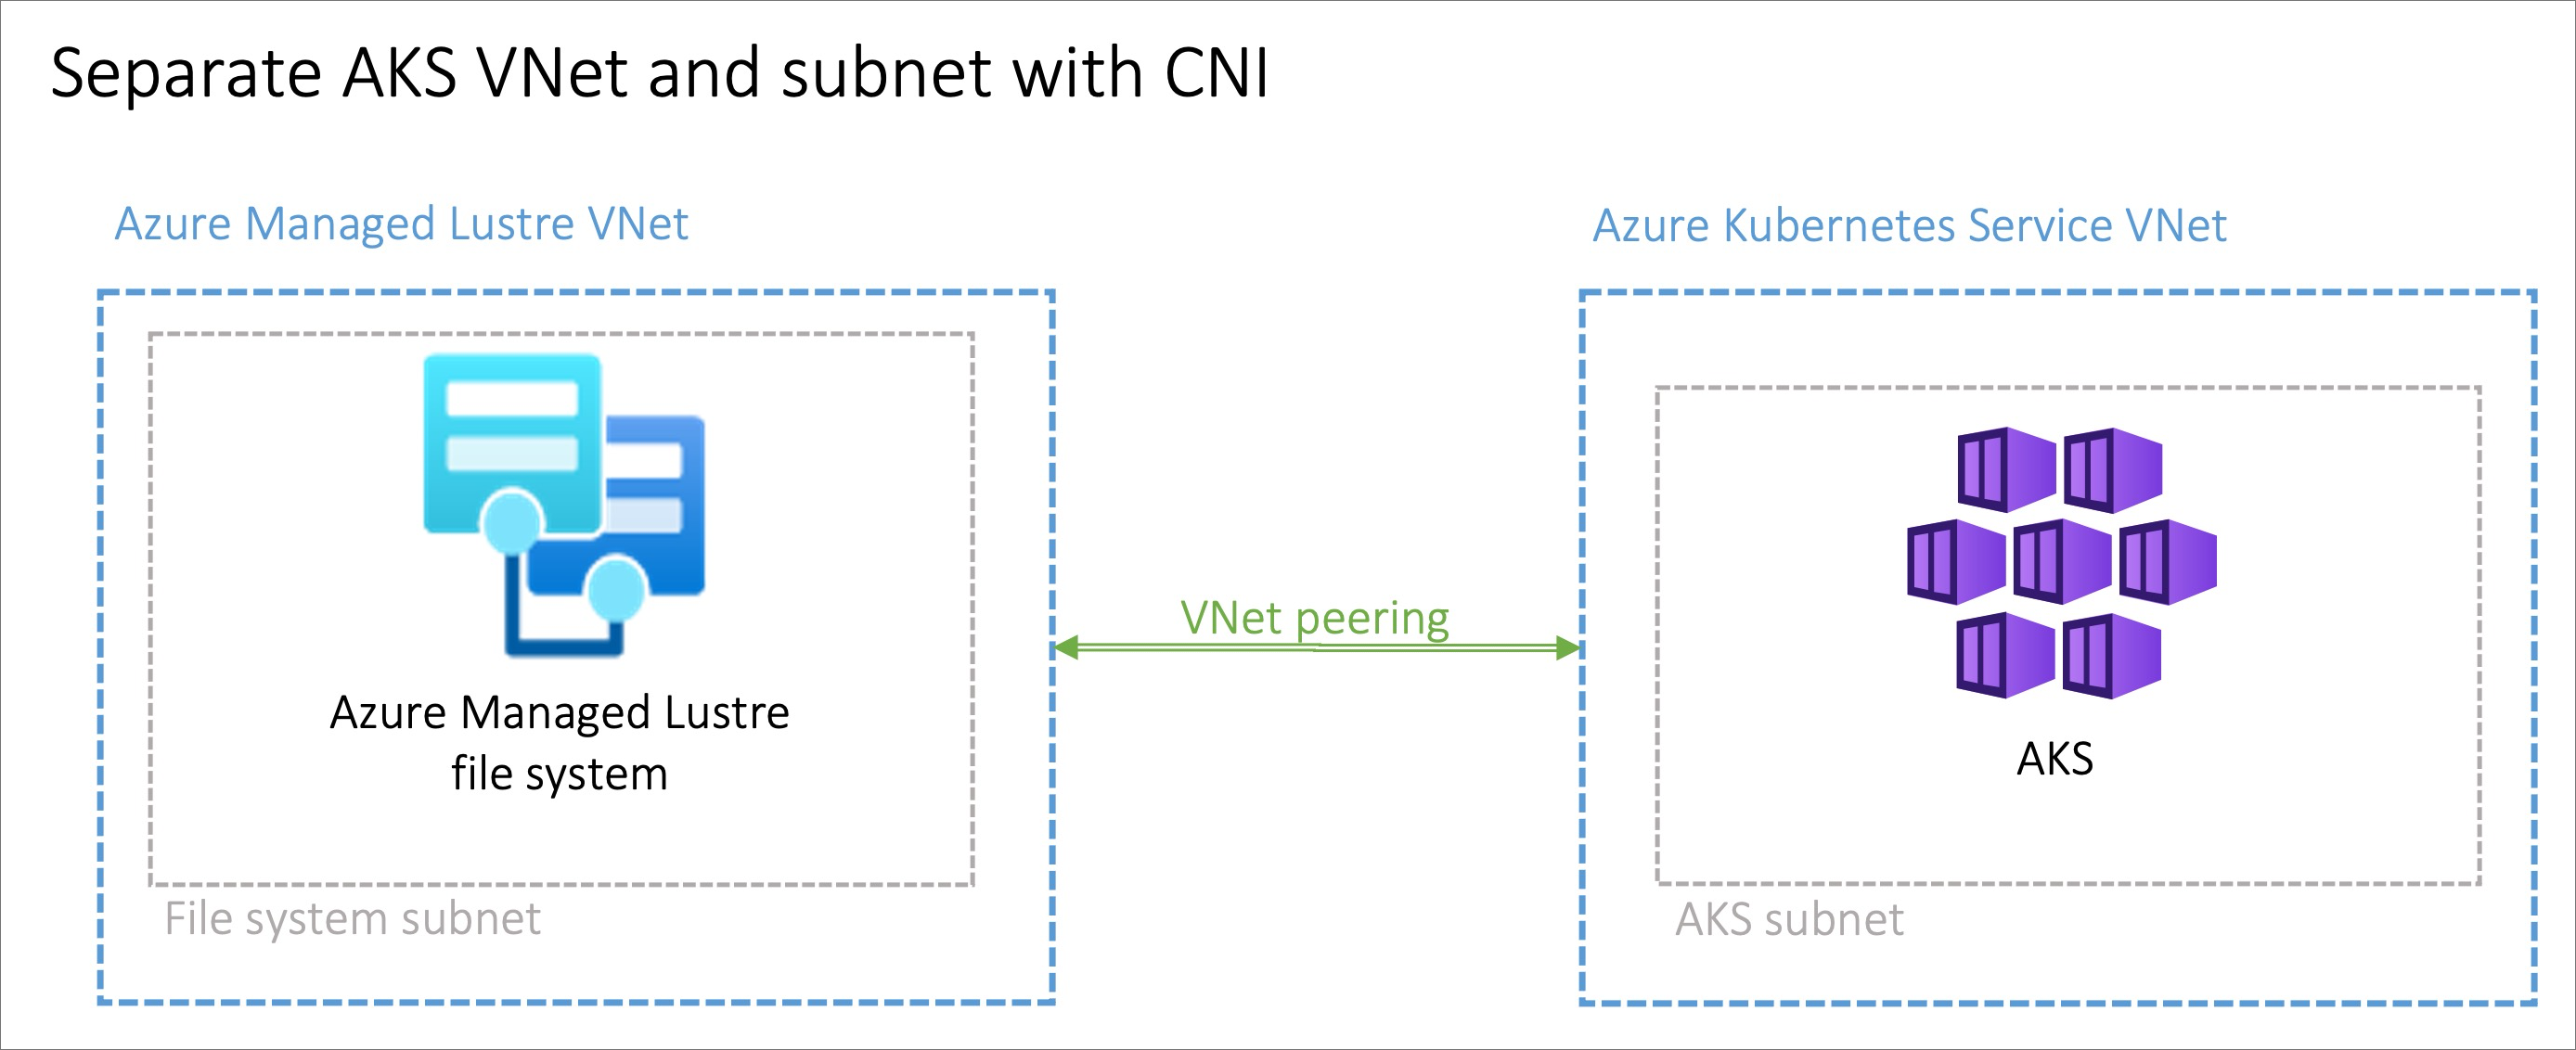 显示两个 VNet 的关系图，一个用于 Azure 托管 Lustre，一个用于 AKS，其中 VNet 对等互连箭头连接它们。